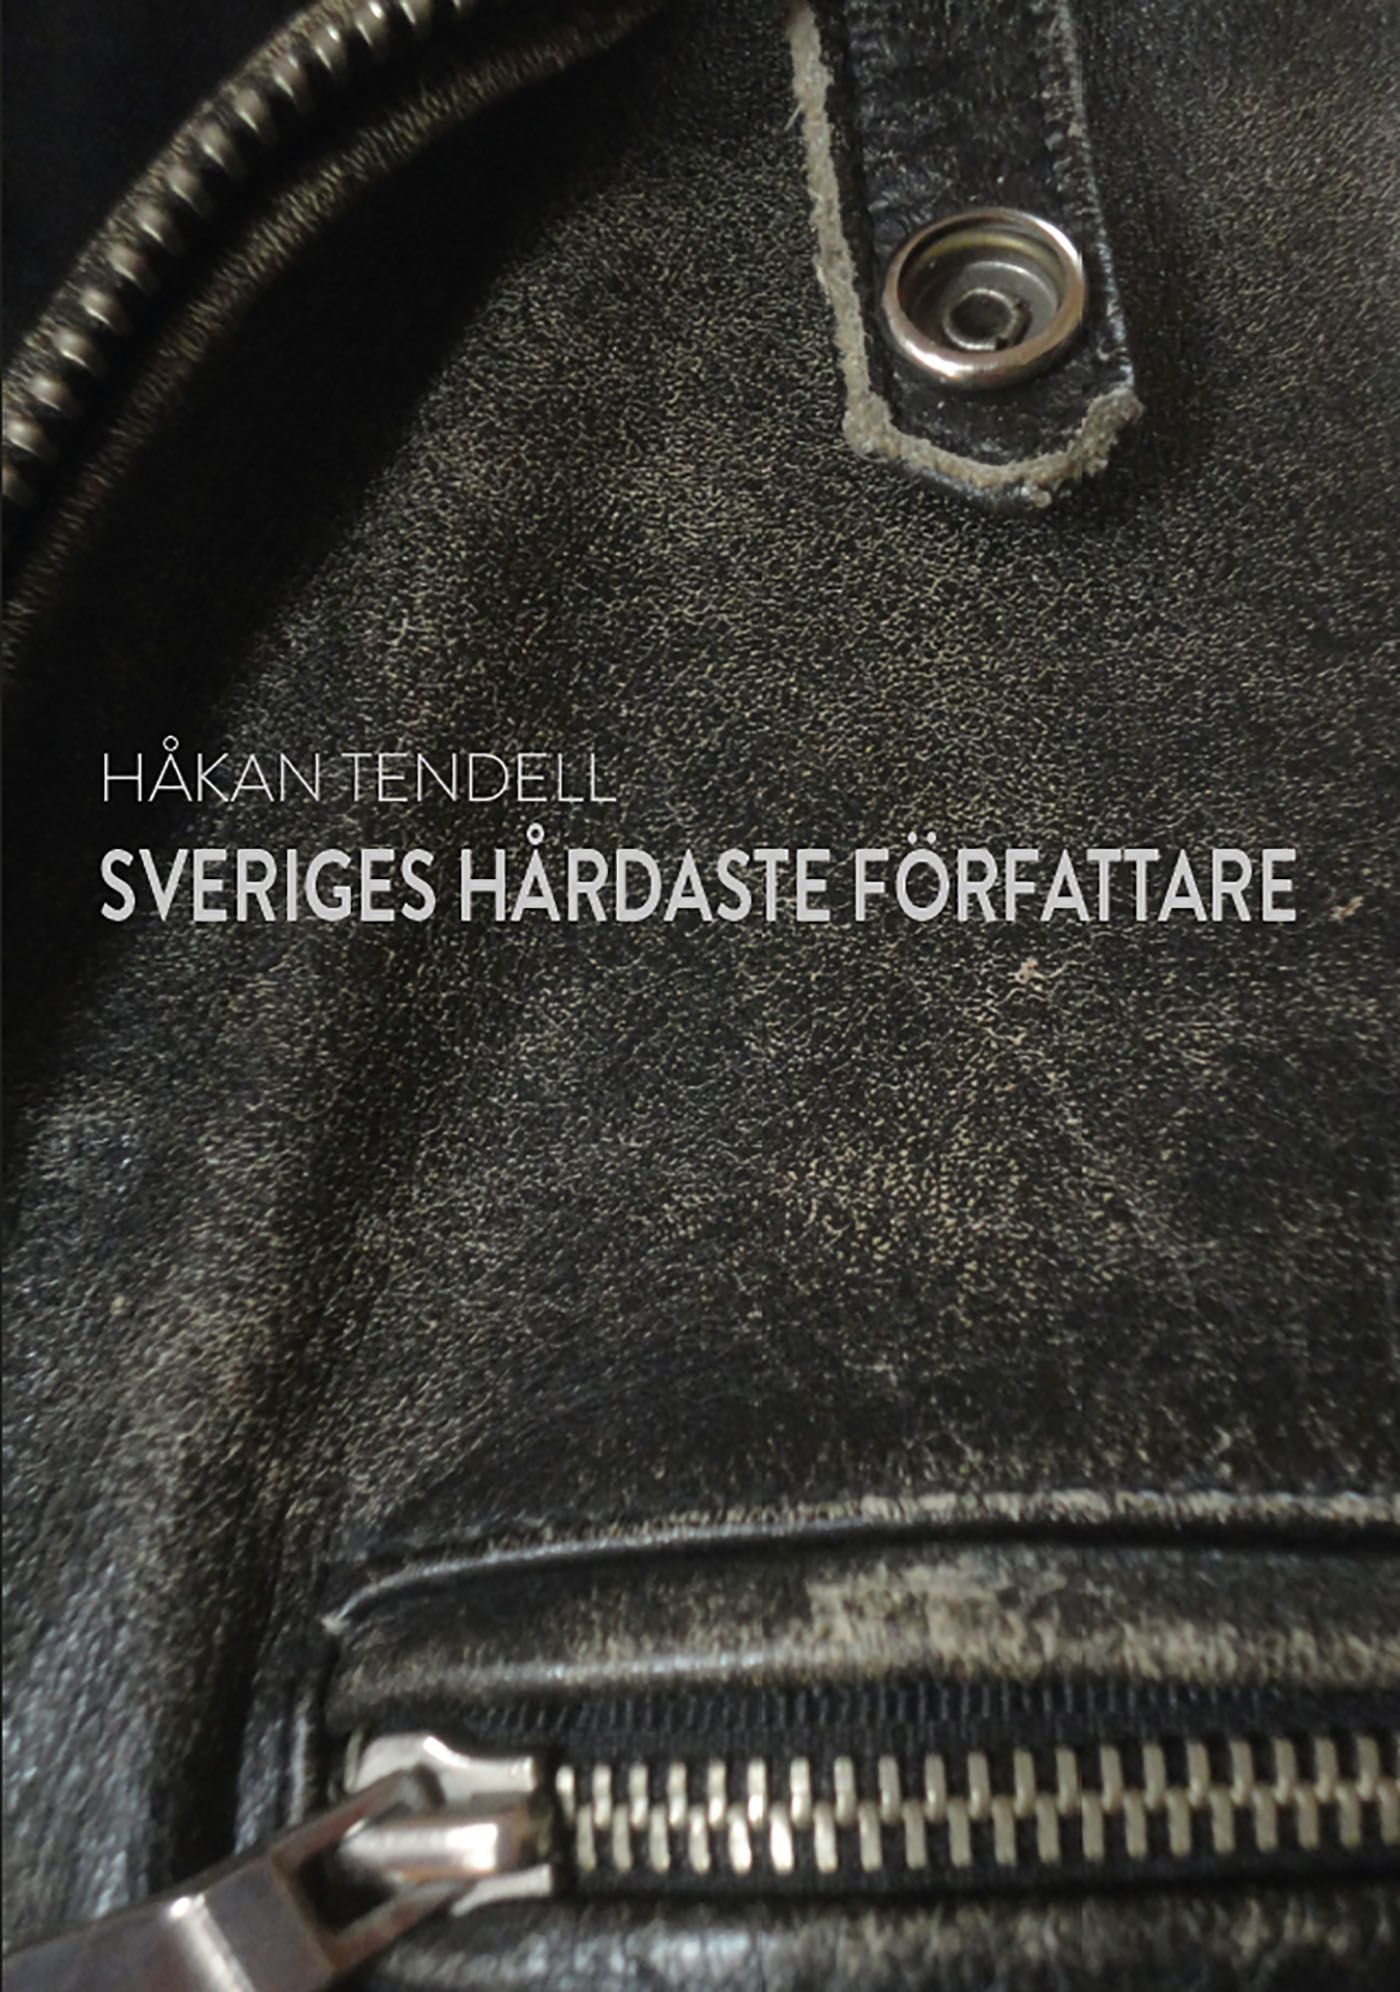 Sveriges hårdaste författare, eBook by Håkan Tendell